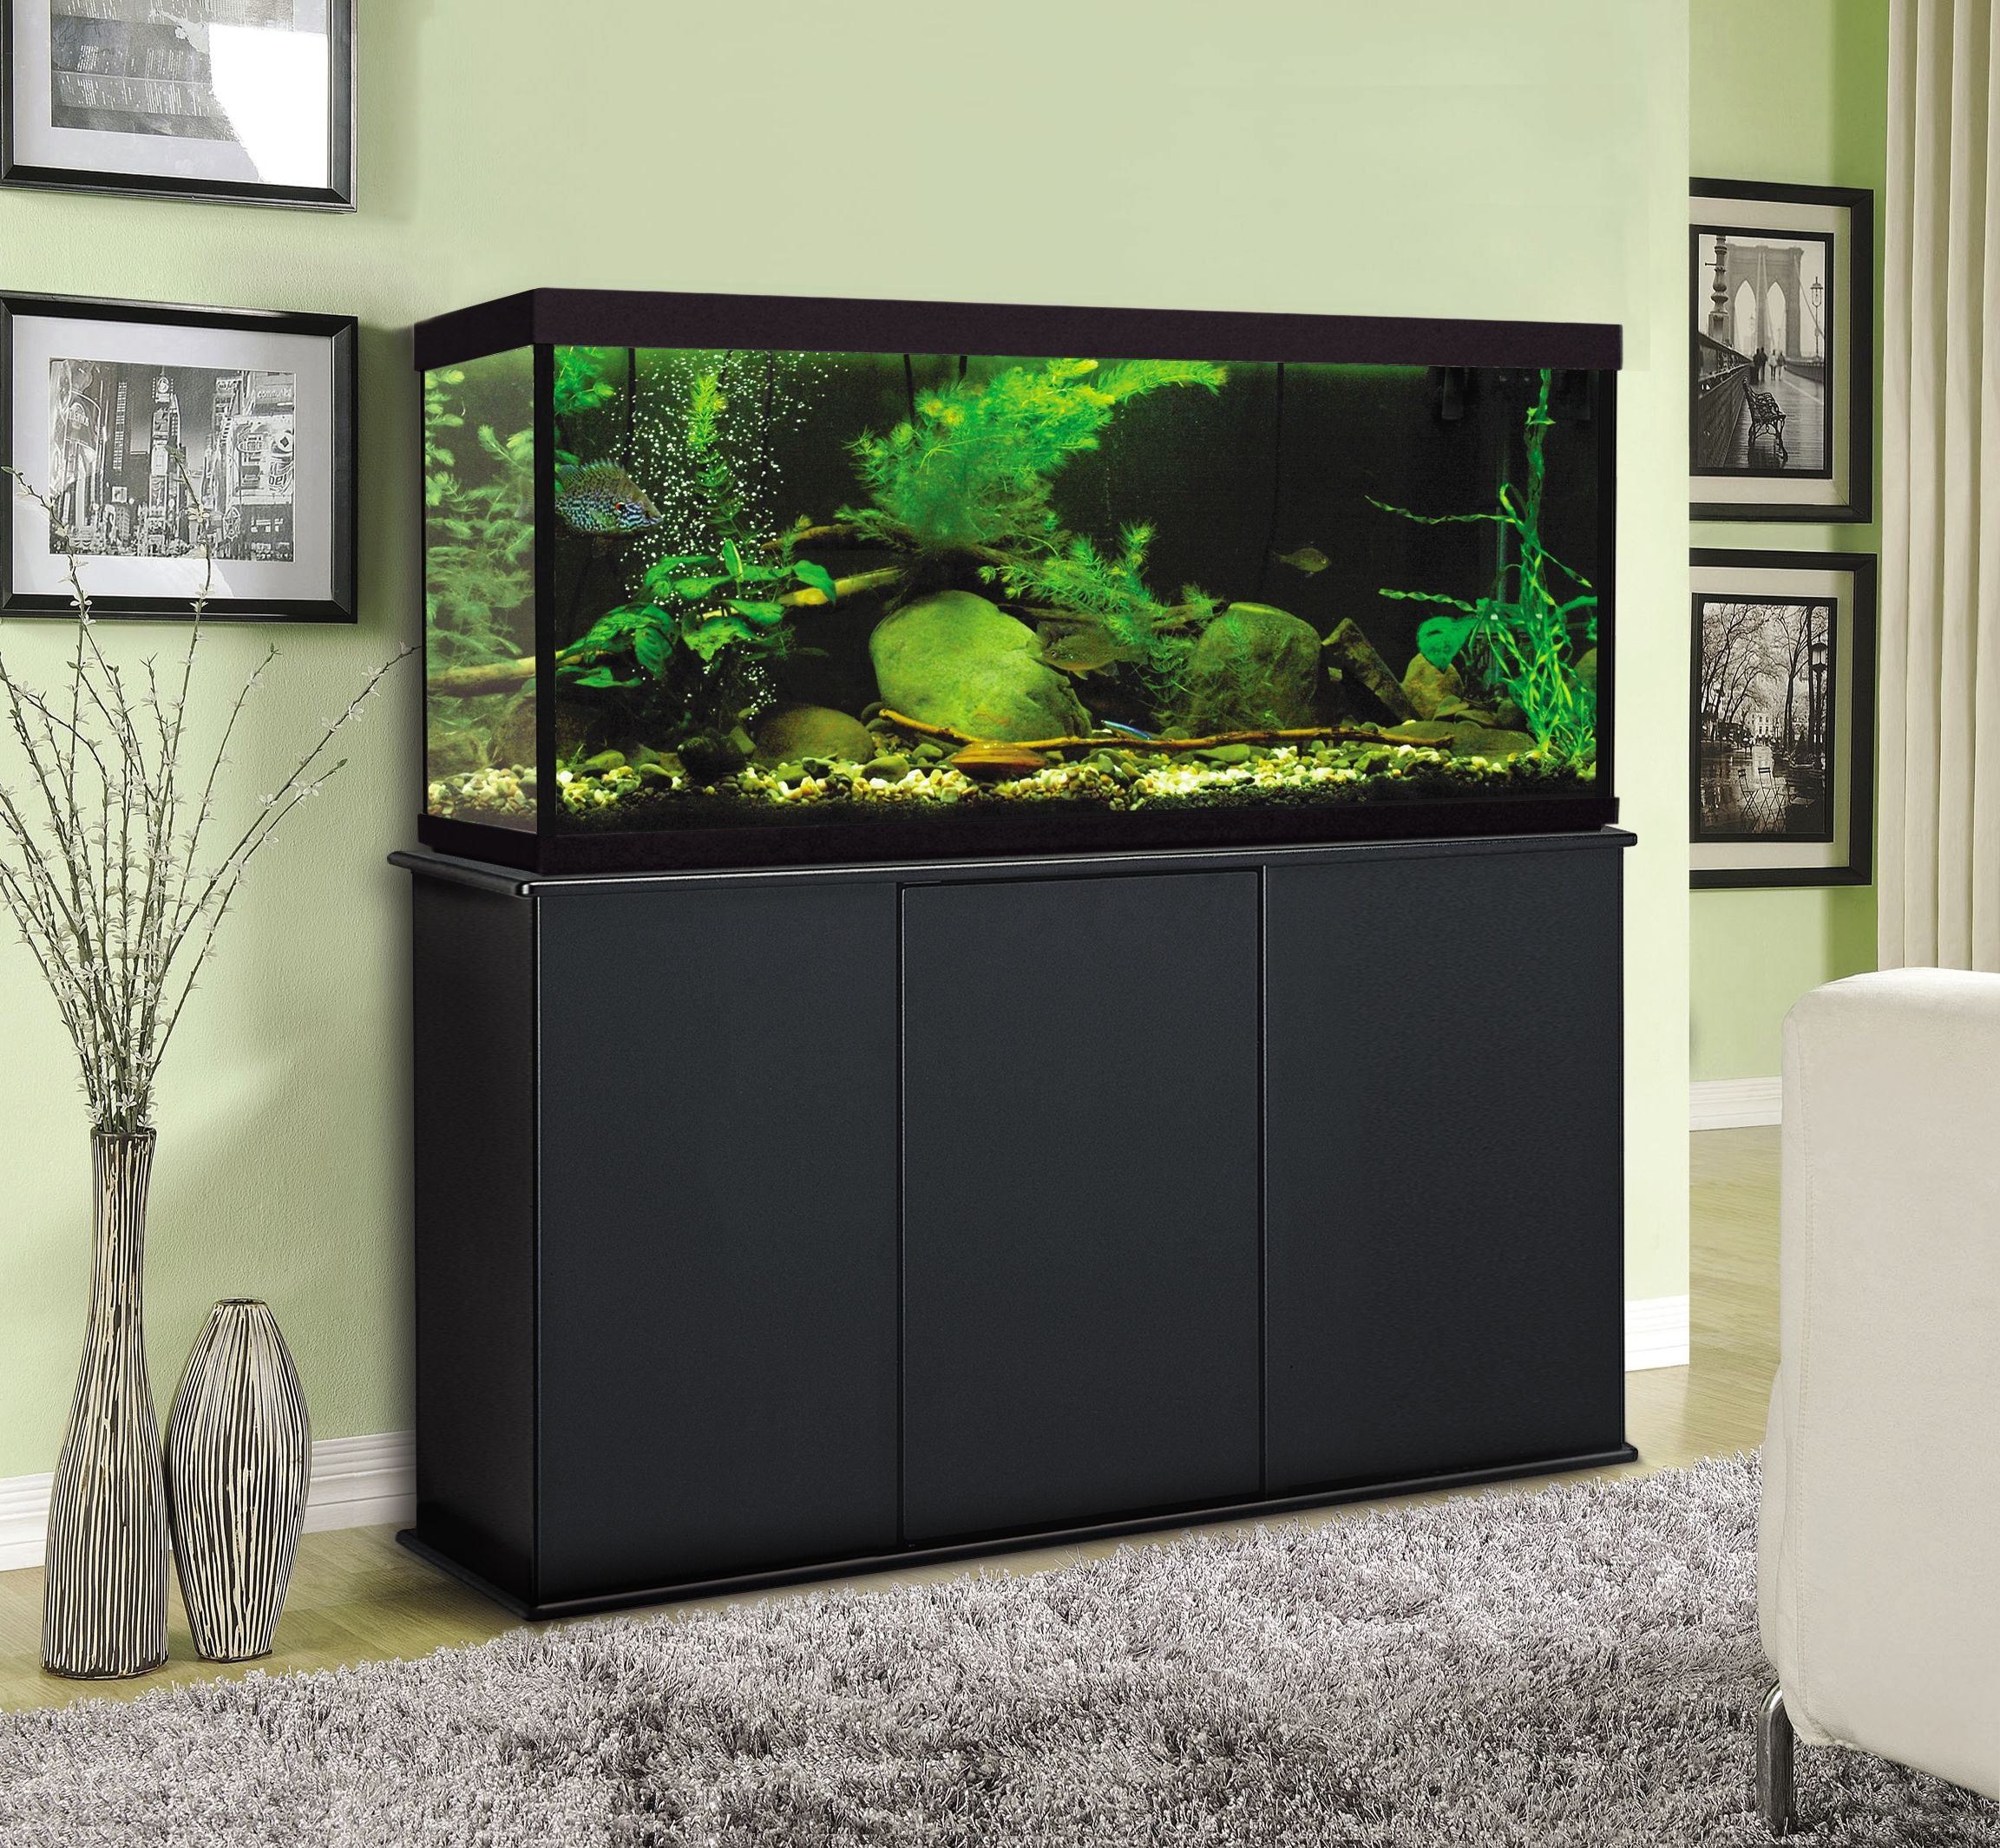 Aquatic Fundamentals 55 Gallon Black Upright Aquarium Stand – Fish